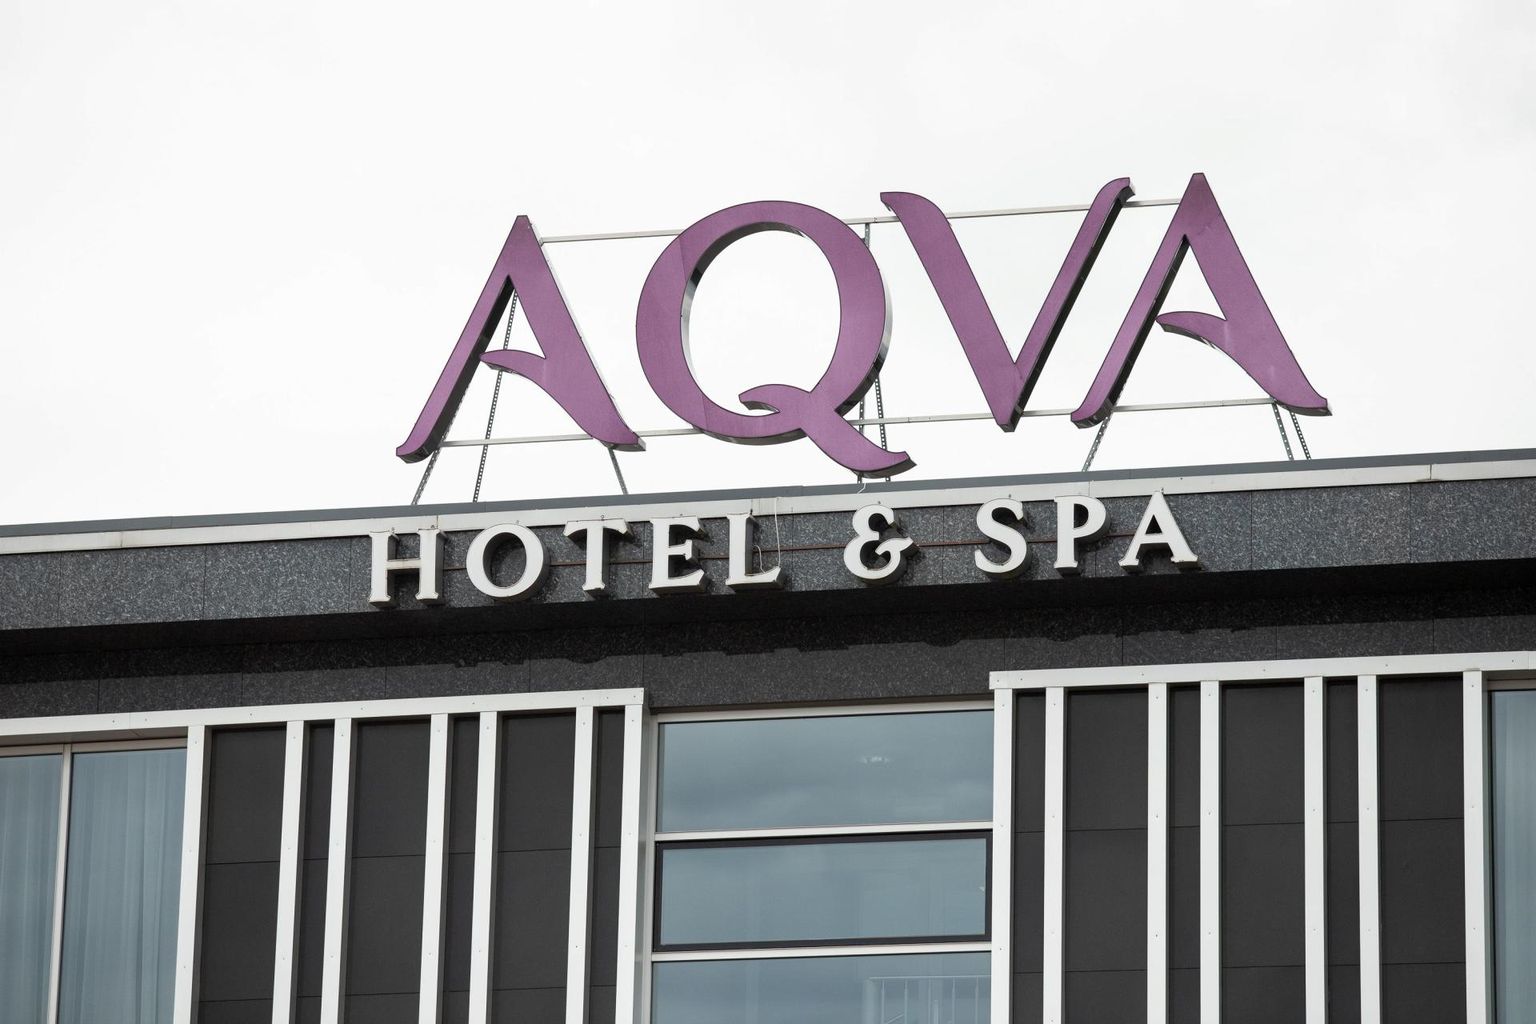 Üks suuremaid majutuskohtasid Lääne-Virumaal on Aqva hotell Rakveres.